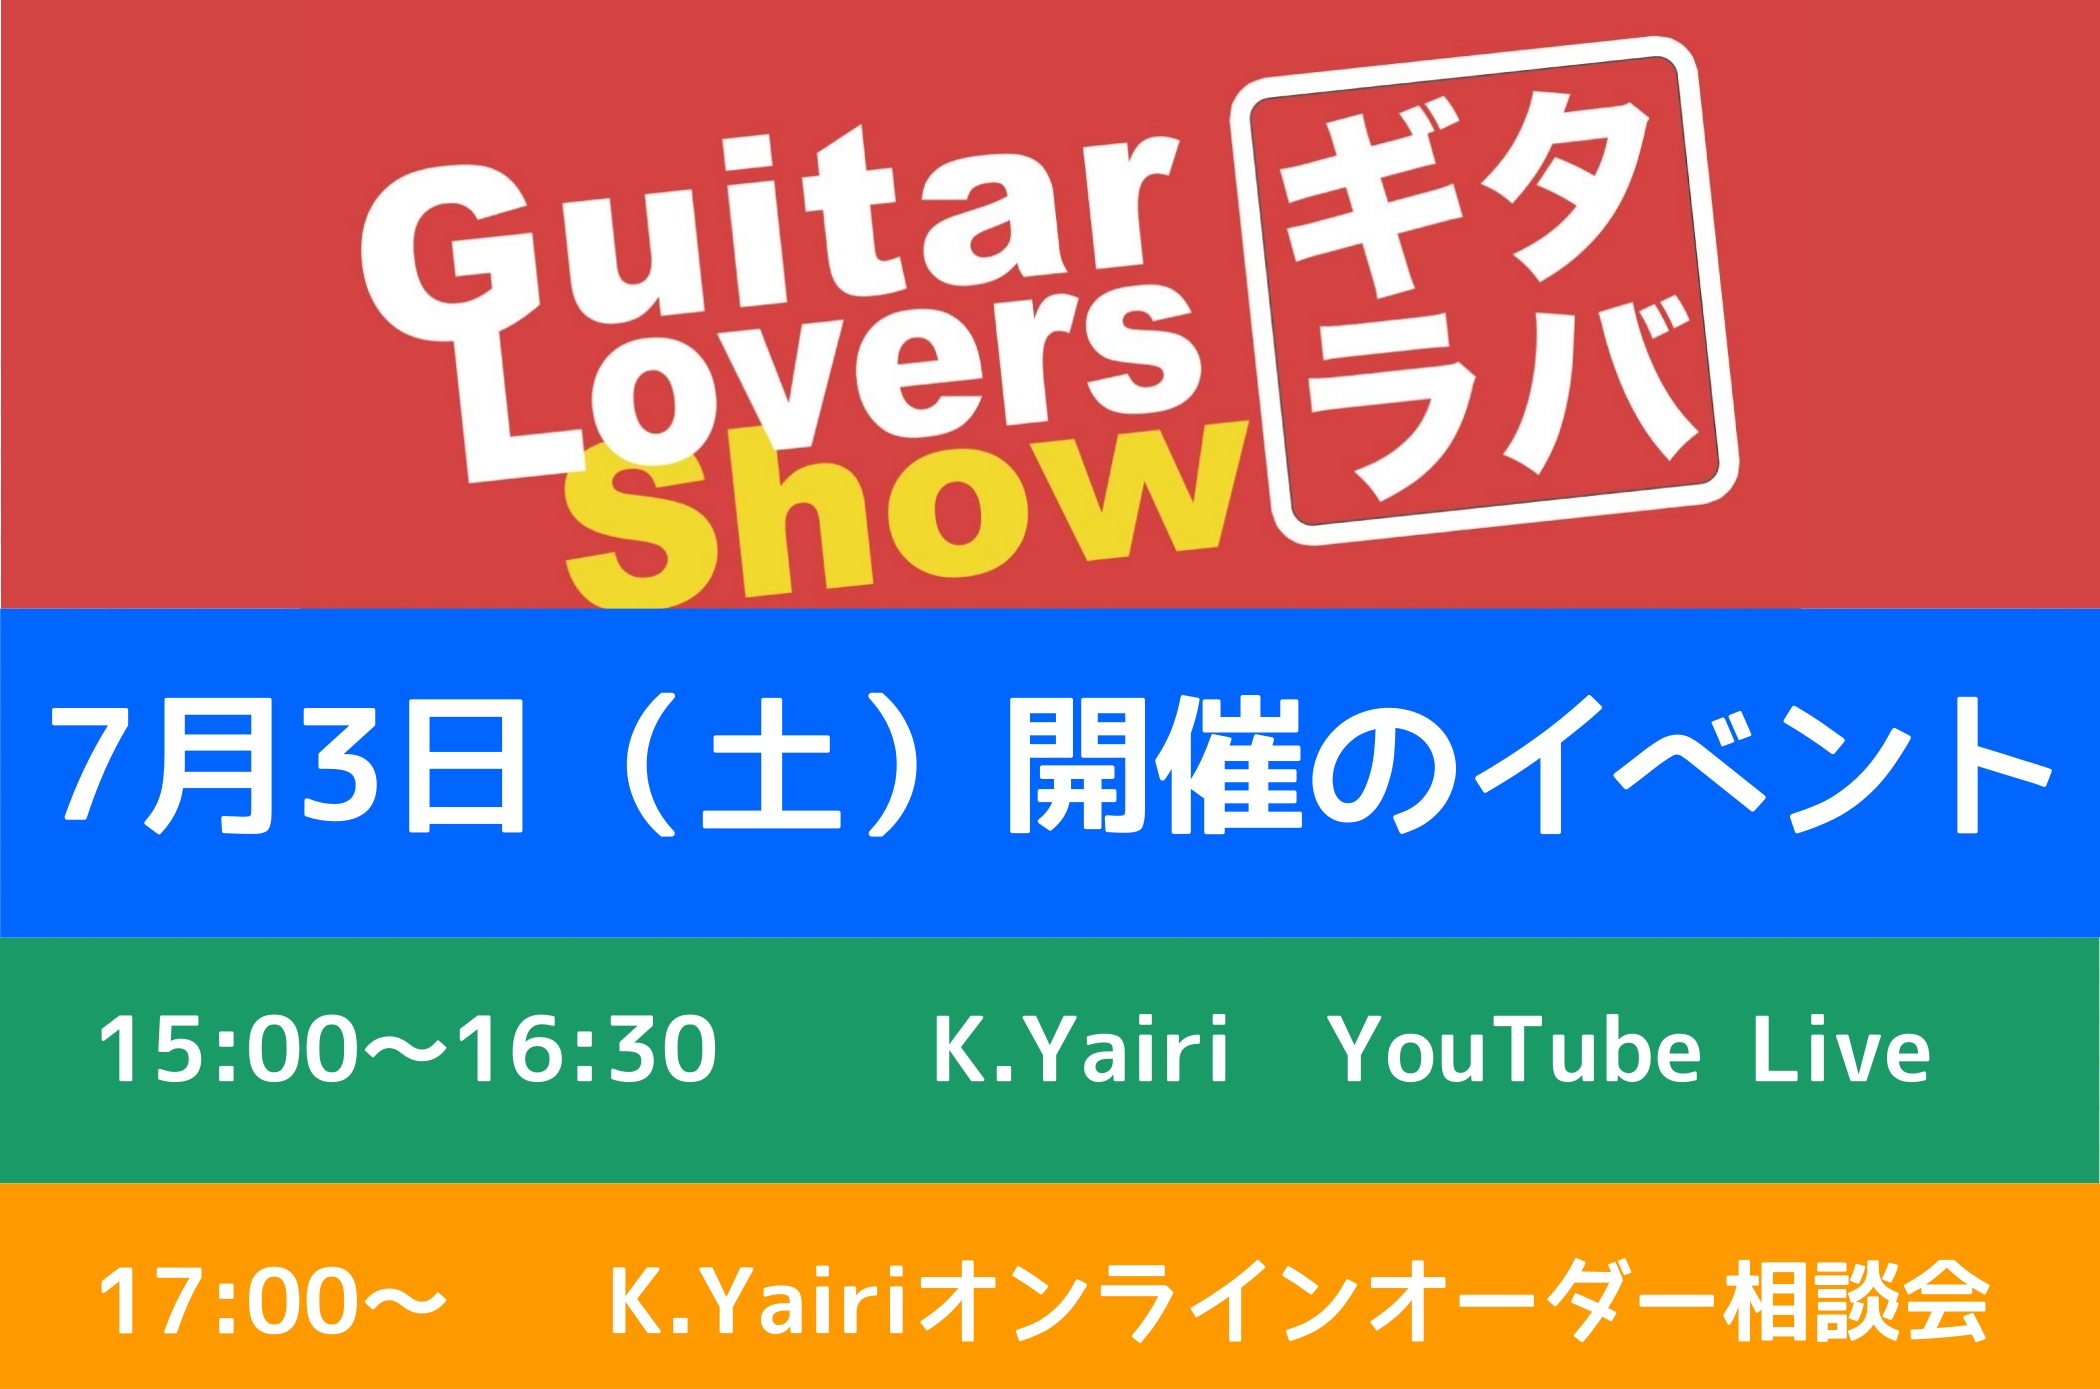 皆様こんにちは。]]全国のギター好きが「ギター愛」で繋がるプロジェクト！略して『ギタラバ』]]本日は名古屋パルコ会場で実施される2つのイベントのご案内をさせて頂きます。 *7/3(土)開催 **15：00-16：30 **YouTubeにて生配信イベントを開催 ヤイリから職人[!!森幸久氏!!]をお […]